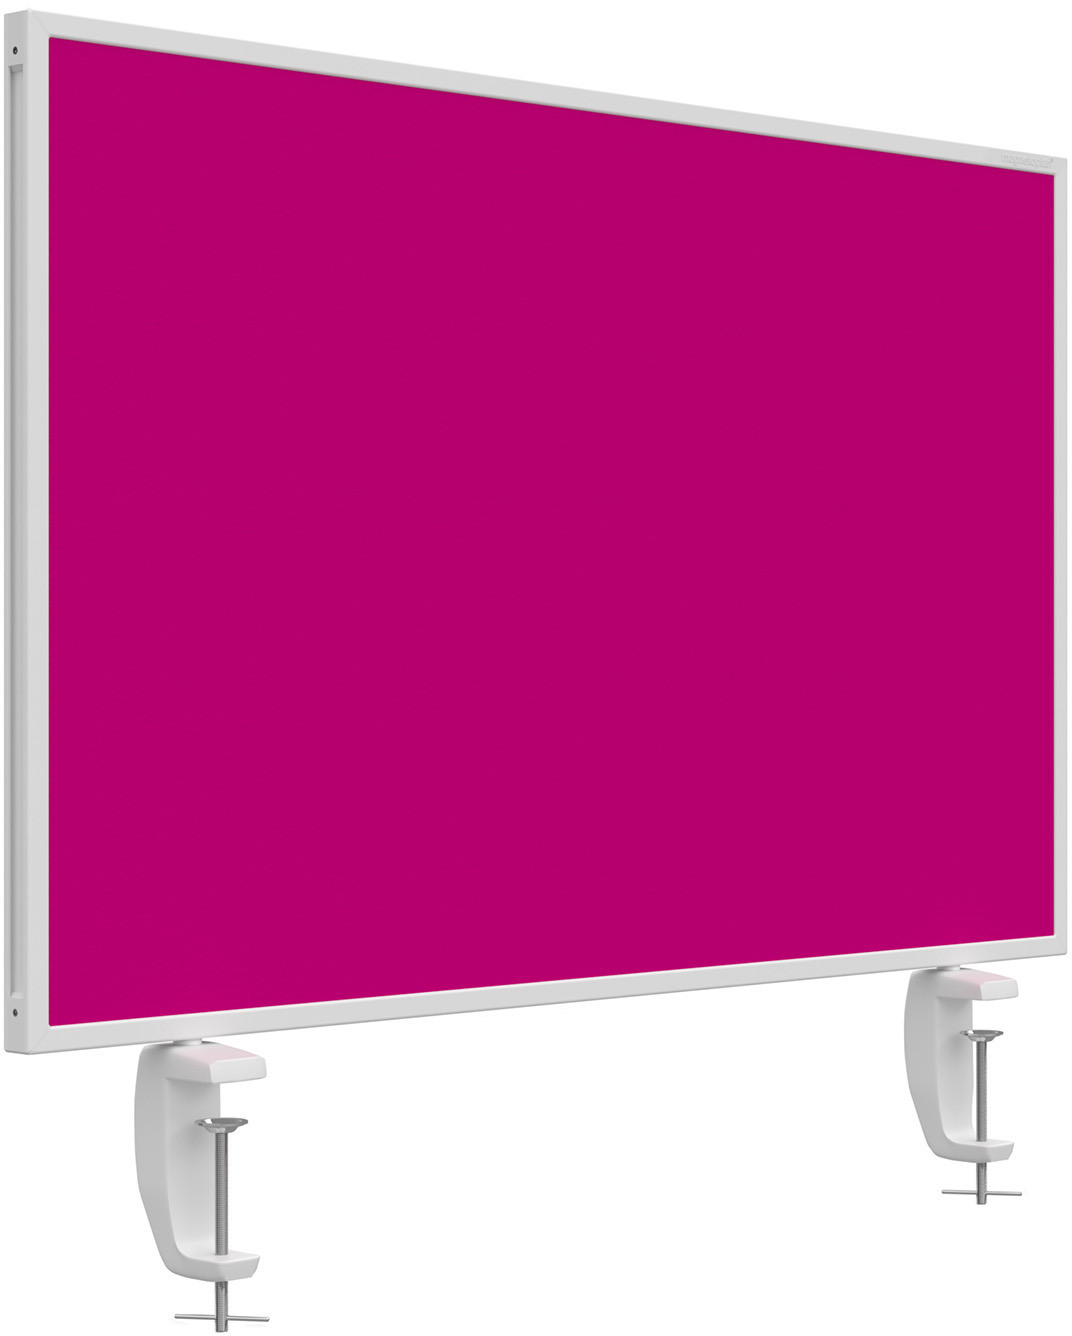 MAGNETOPLAN Tischtrennwand VarioPin 1108018 pink 800x500mm